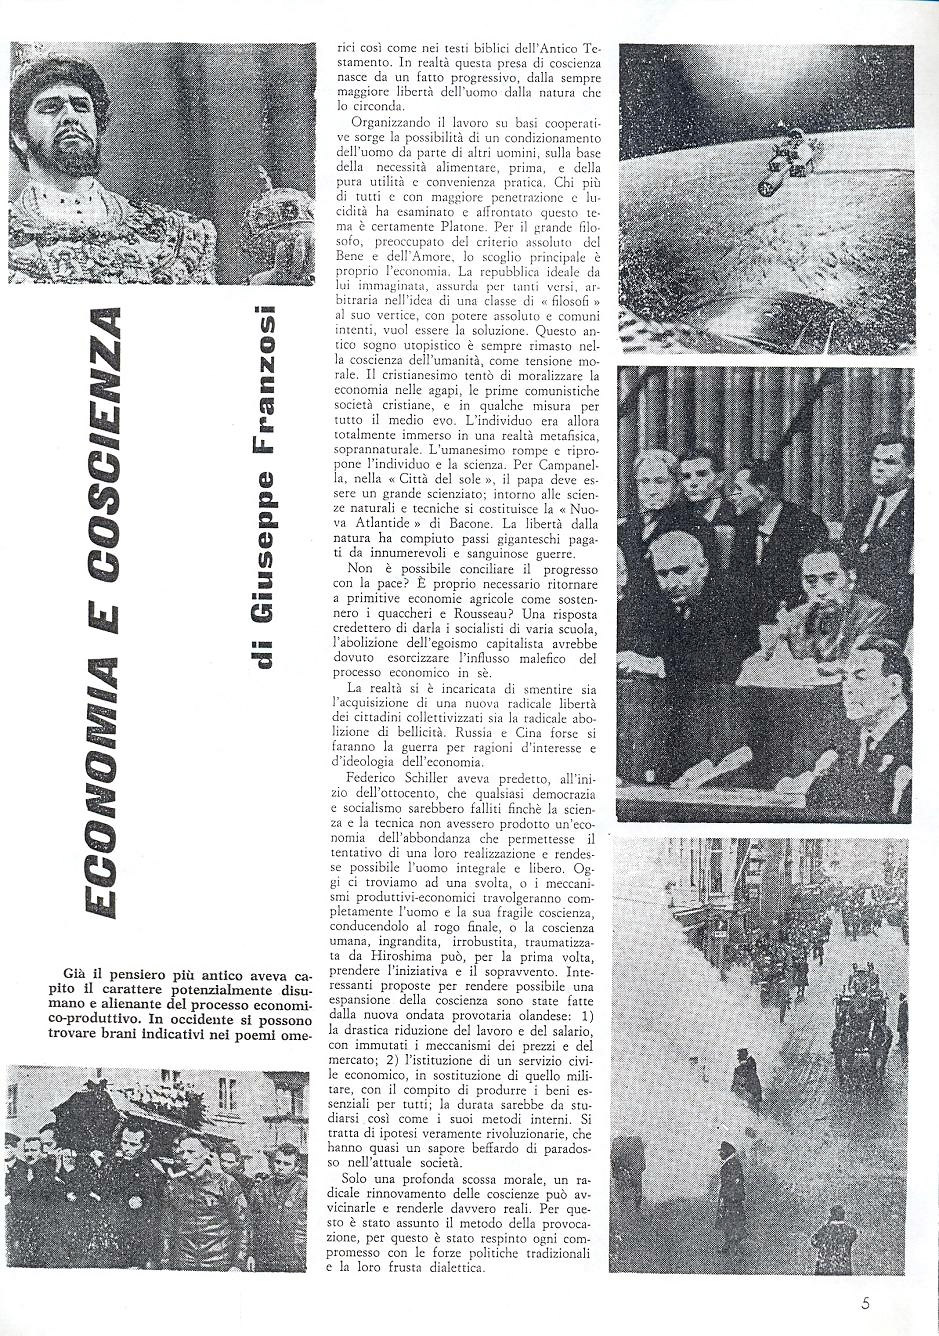 Il quinto numero della rivista Mondo Beat - Tiratura copie 8.000 - Datato 30 aprile 1967